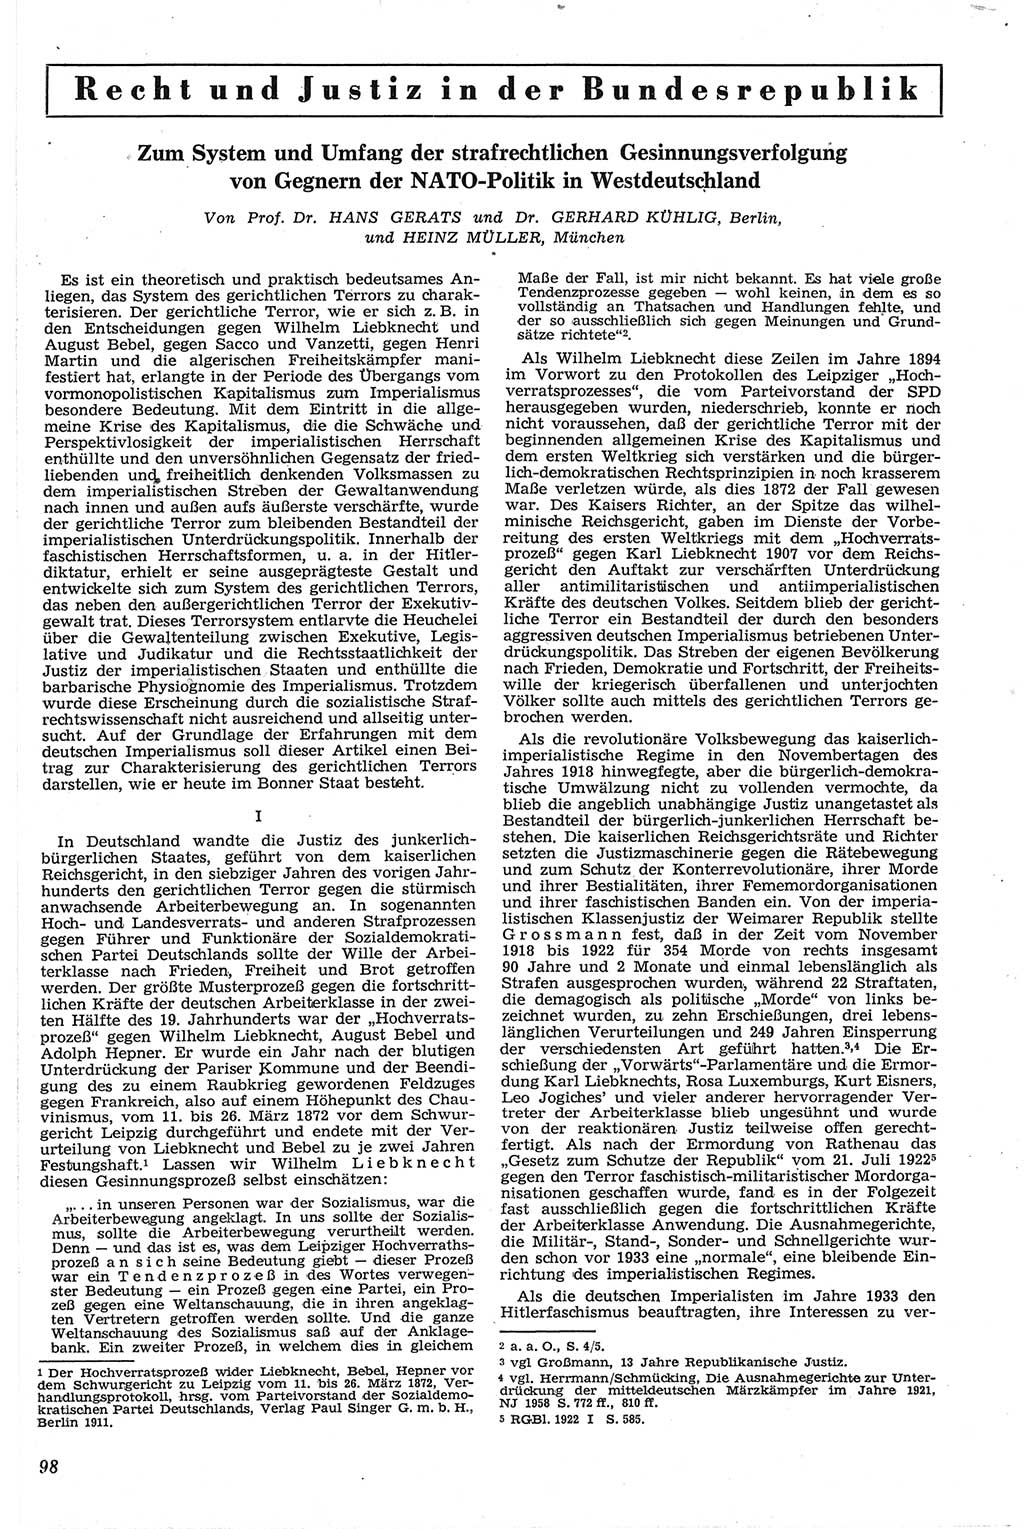 Neue Justiz (NJ), Zeitschrift für Recht und Rechtswissenschaft [Deutsche Demokratische Republik (DDR)], 13. Jahrgang 1959, Seite 98 (NJ DDR 1959, S. 98)